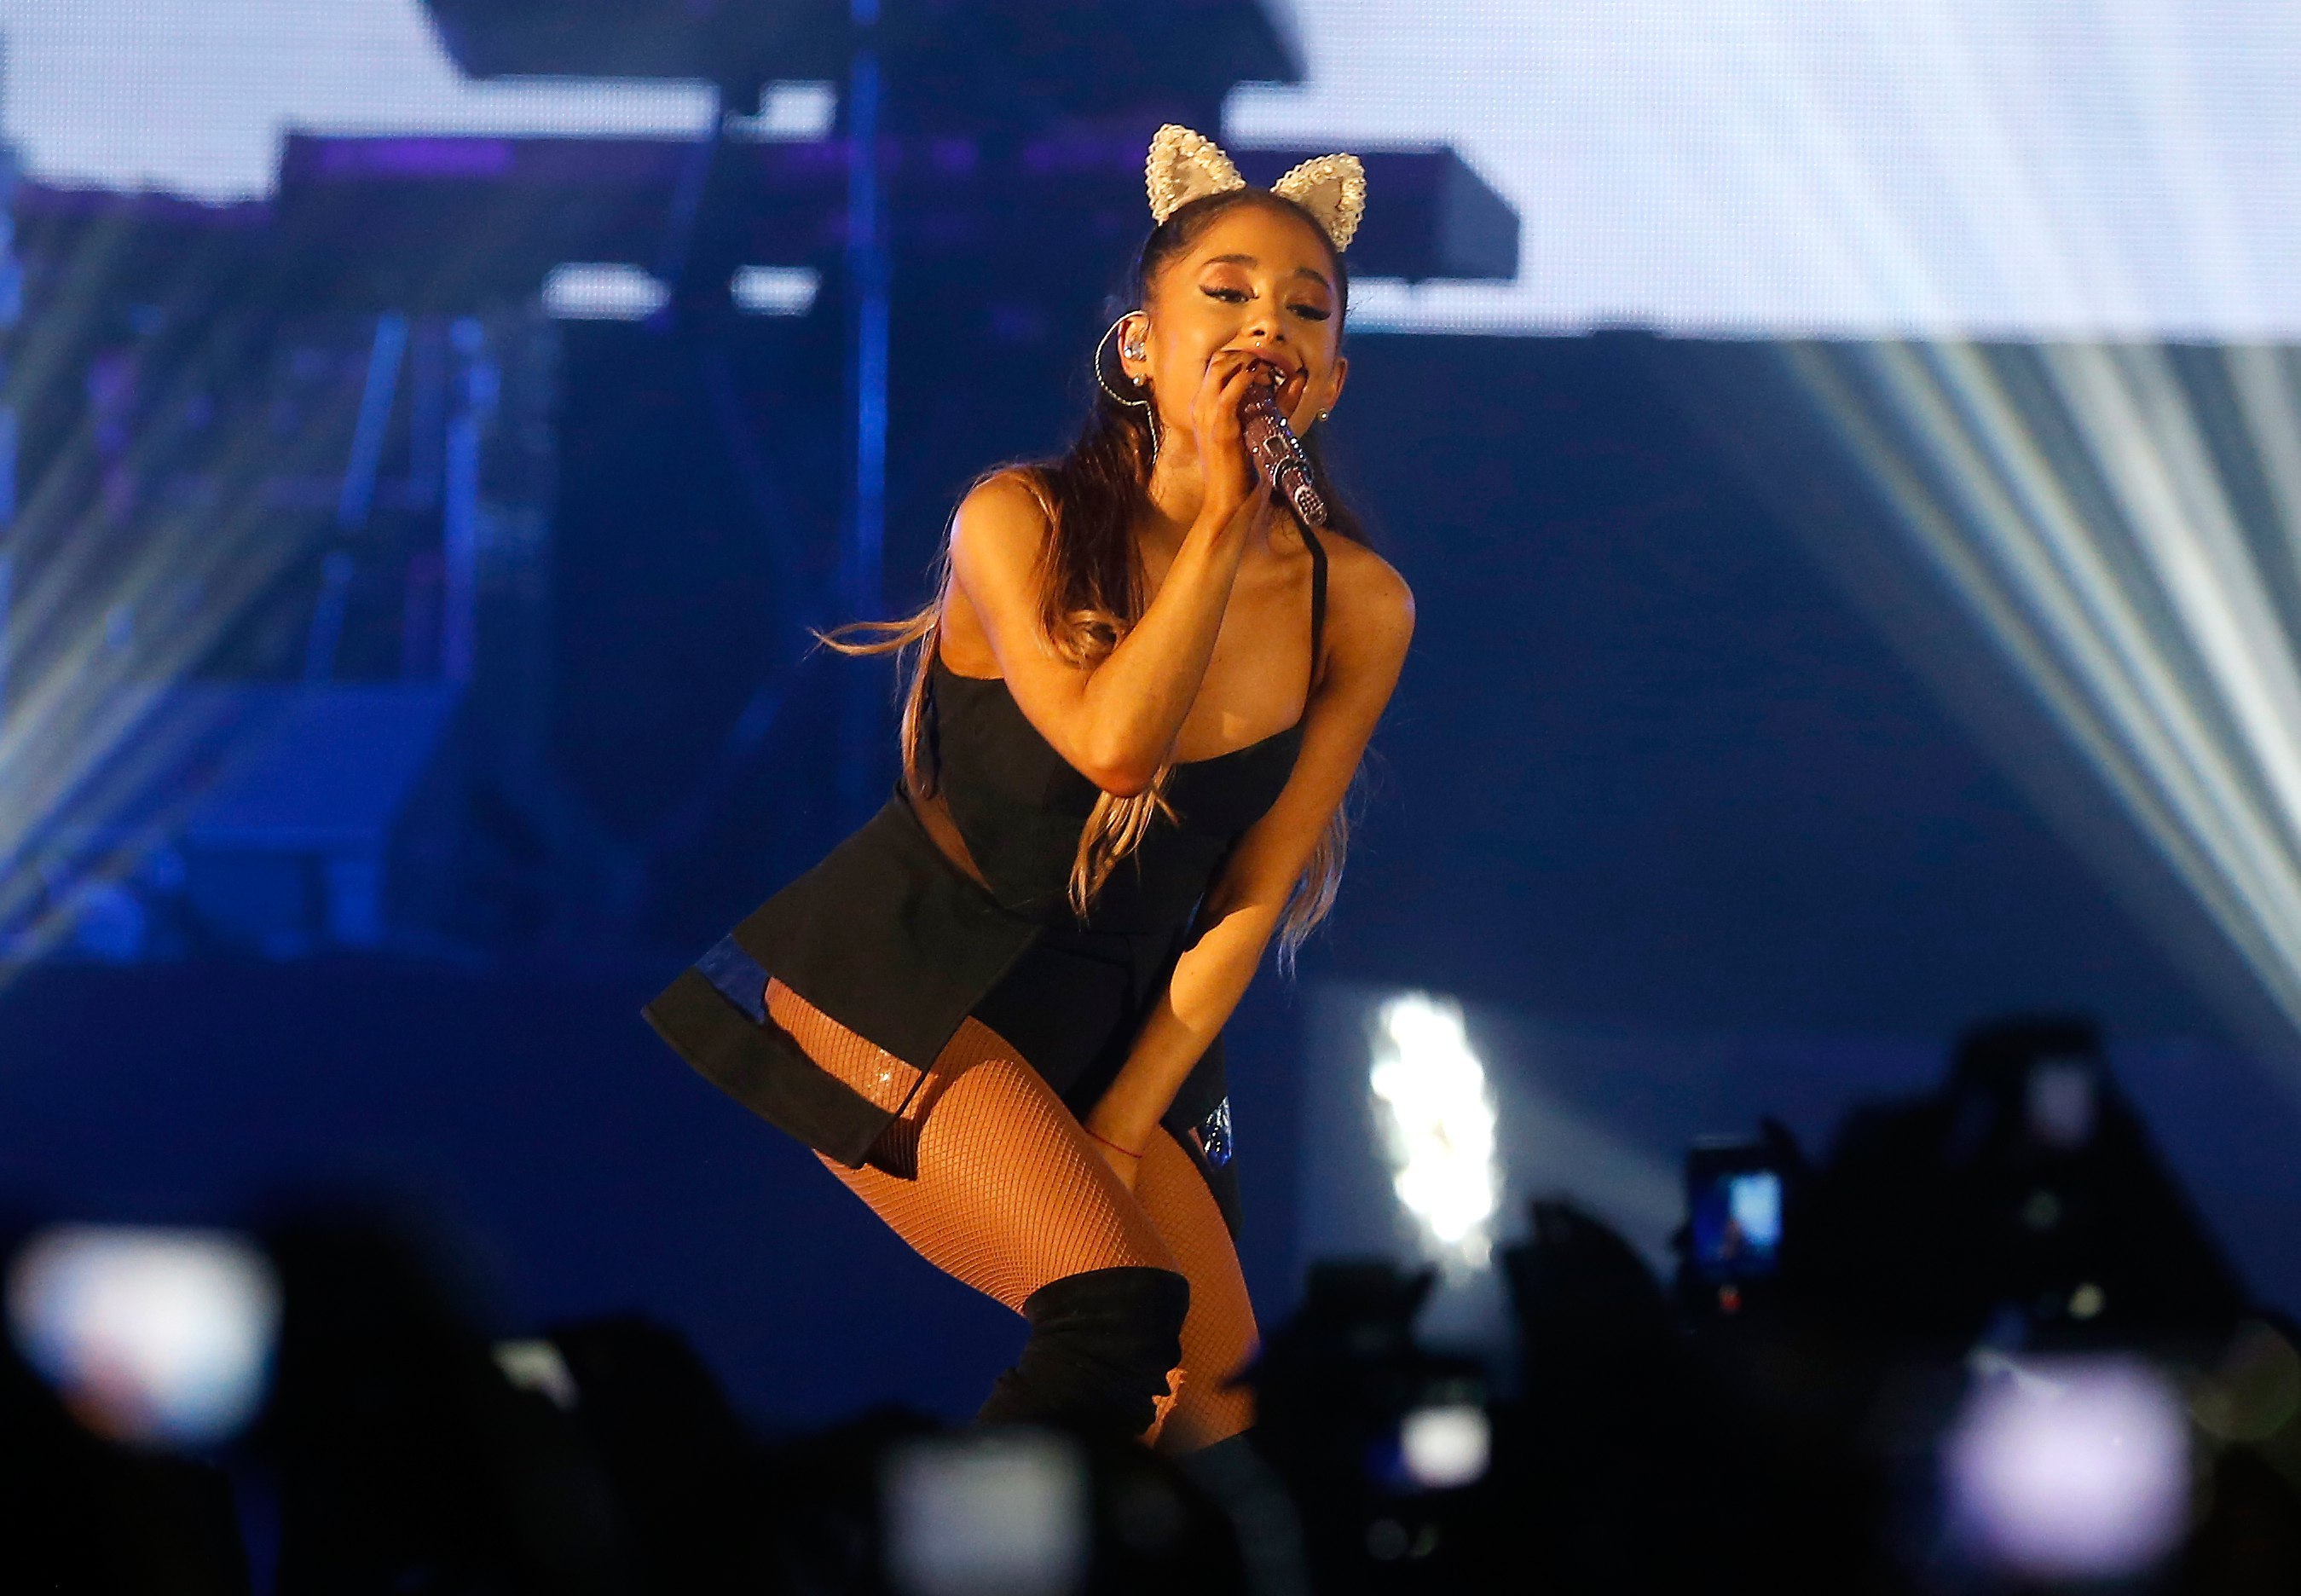 La cantante estadounidense Ariana Grande en un concierto de su gira Honeymoon, en Jakarta (Indonesia